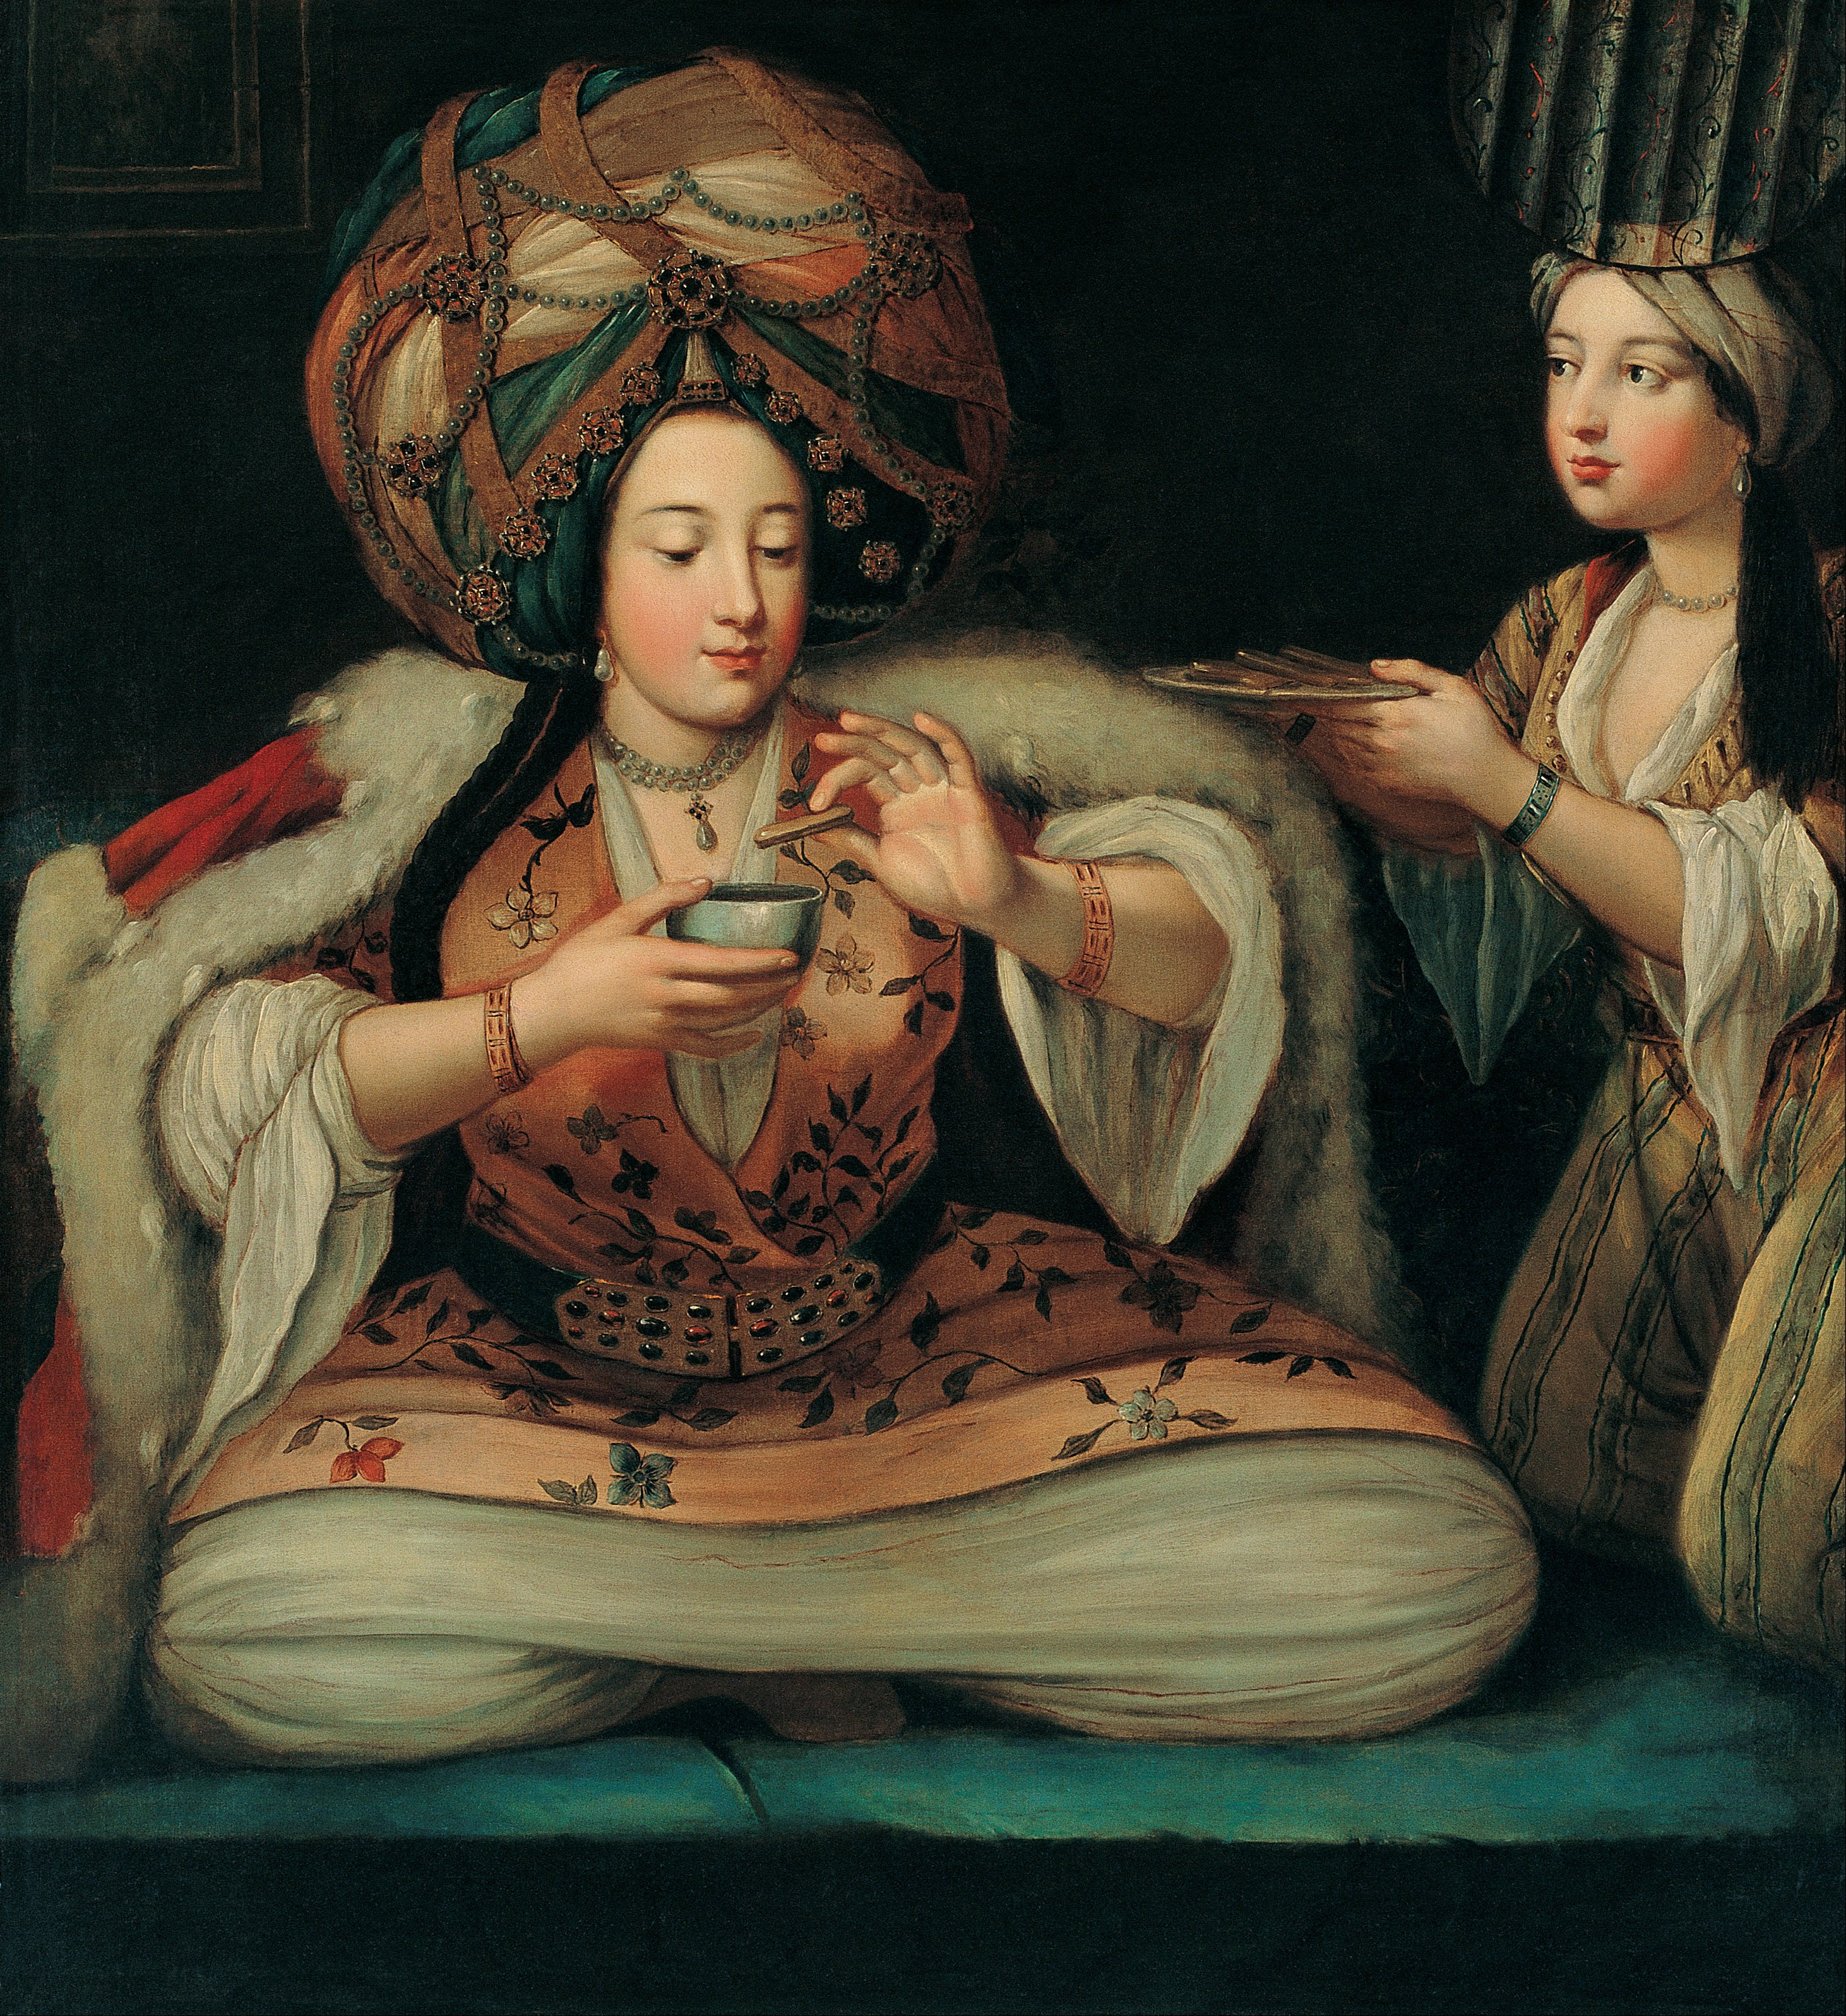 Femme turque prenant le café by Artiste Inconnu - Première moitié du 18e siècle - 101.5 x 112 cm 